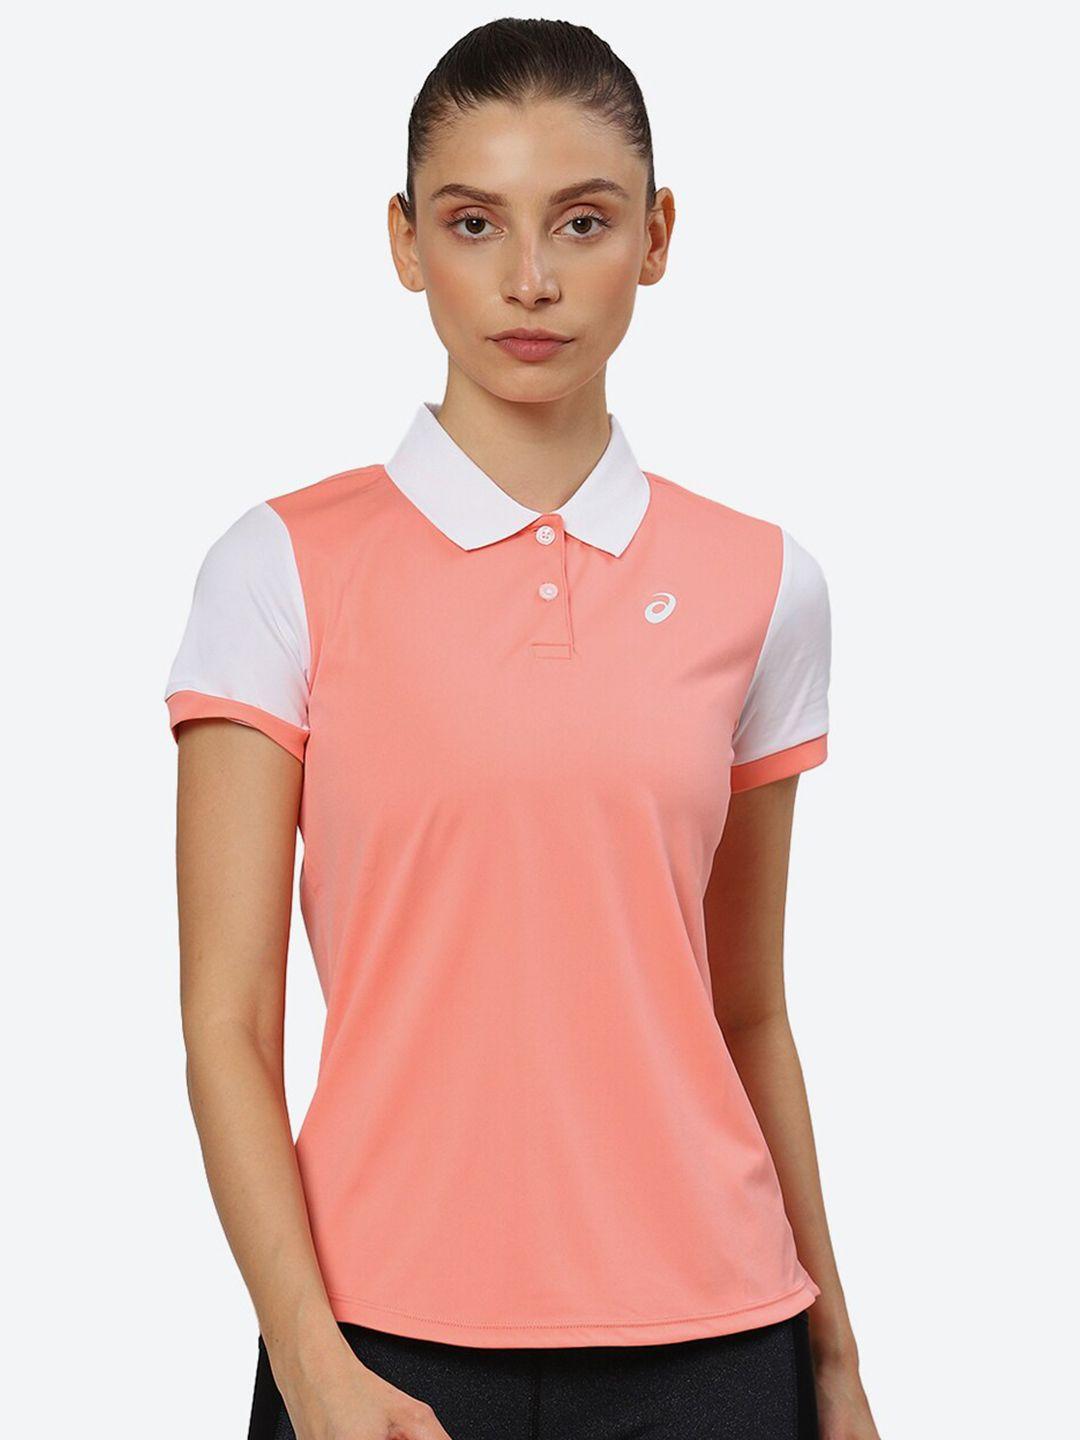 asics-women-court-polo-t-shirt